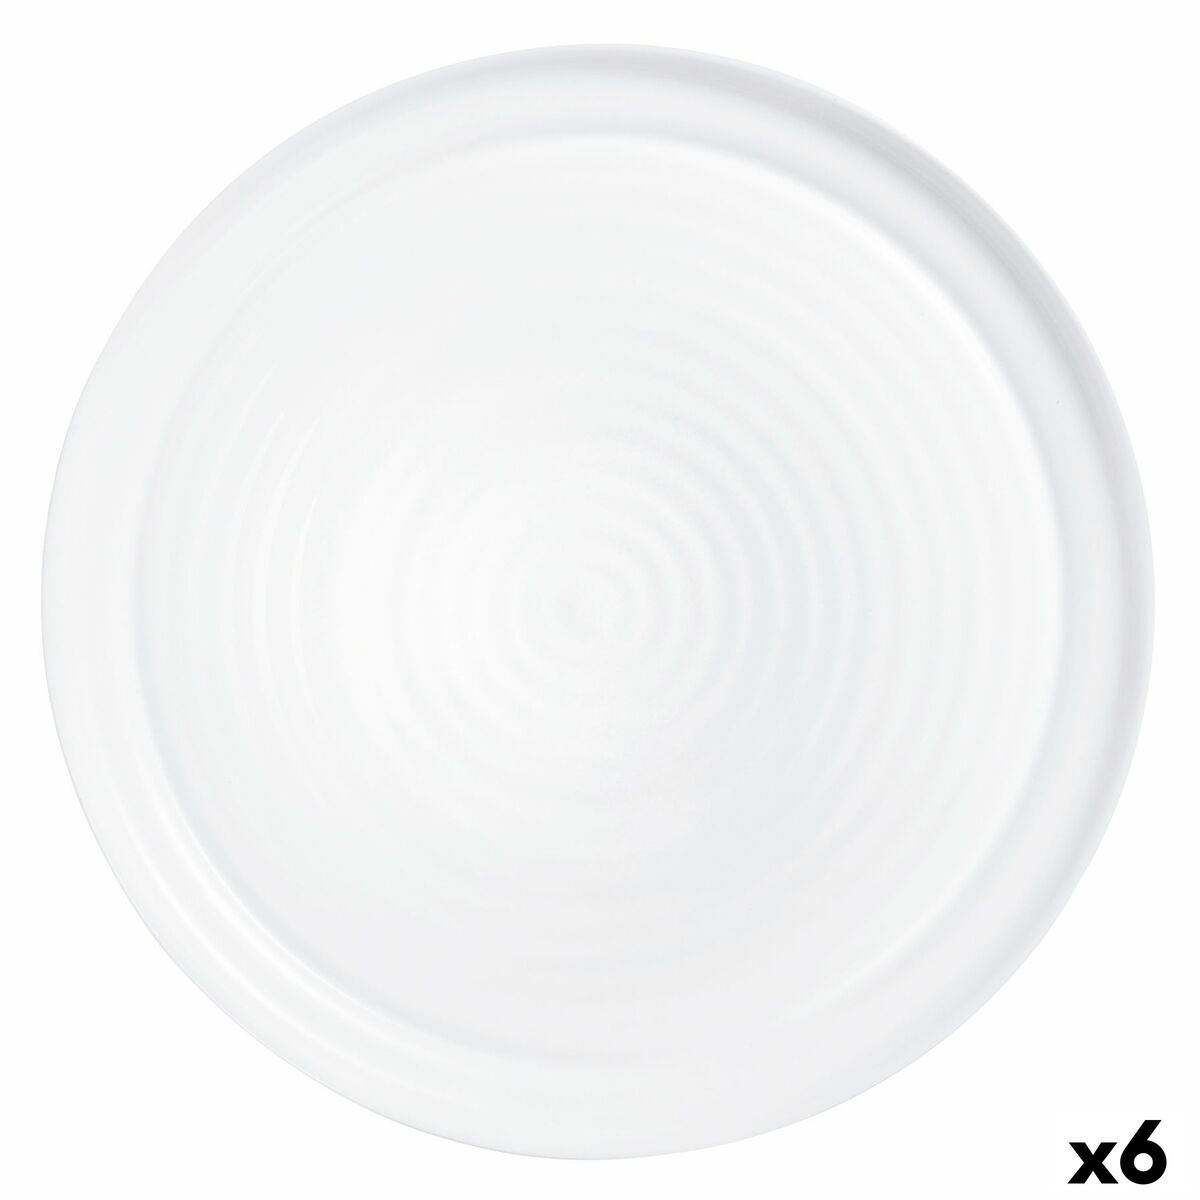 Osta tuote Pizzalautanen Arcoroc Evolutions Valkoinen Lasi Ø 32 cm (6 osaa) verkkokaupastamme Korhone: Gourmet & Keittiö 10% alennuksella koodilla KORHONE